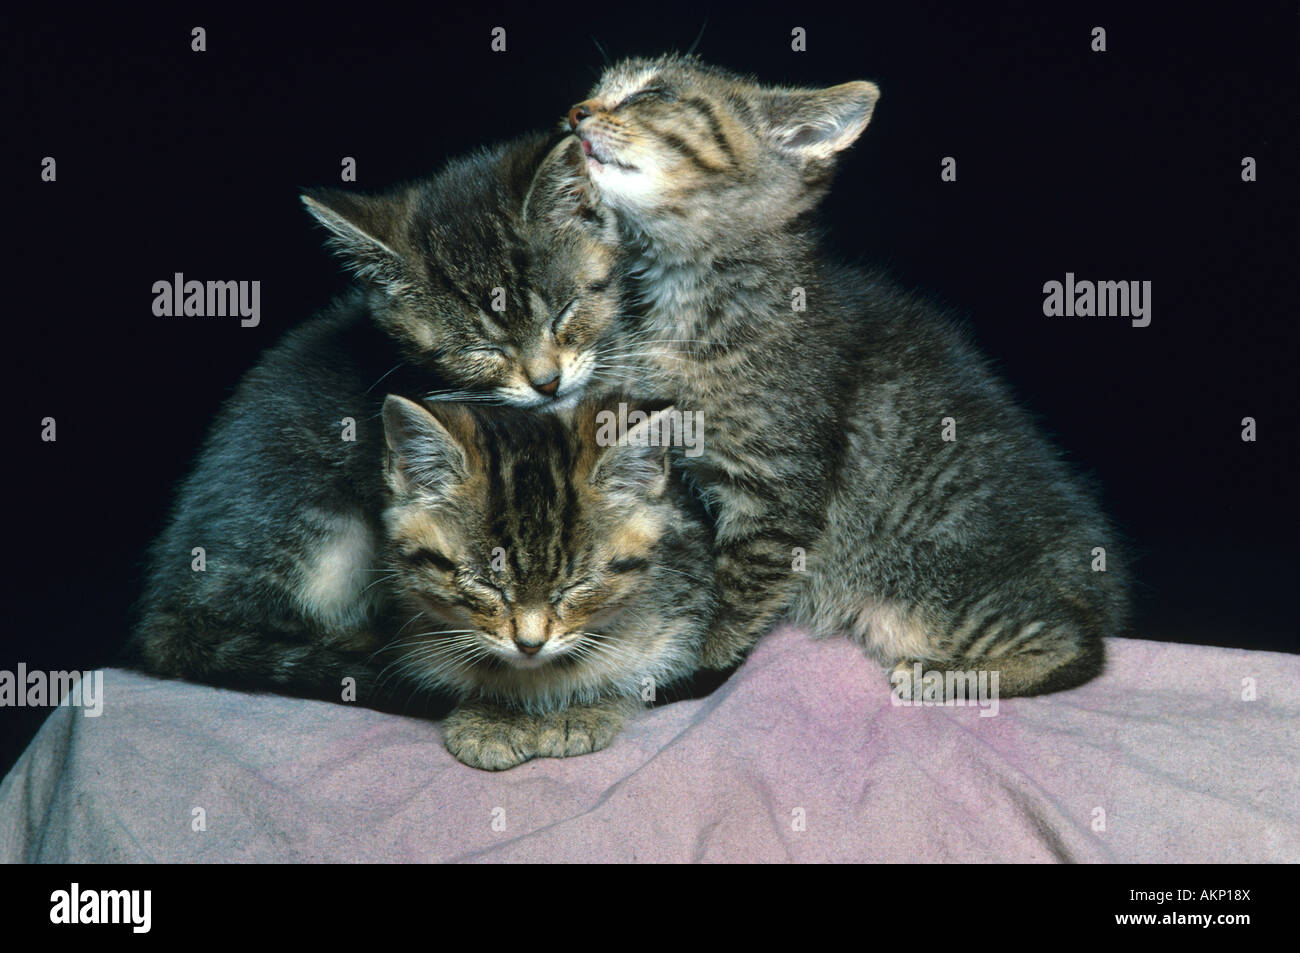 Three Sleeping Kittens Stock Photo